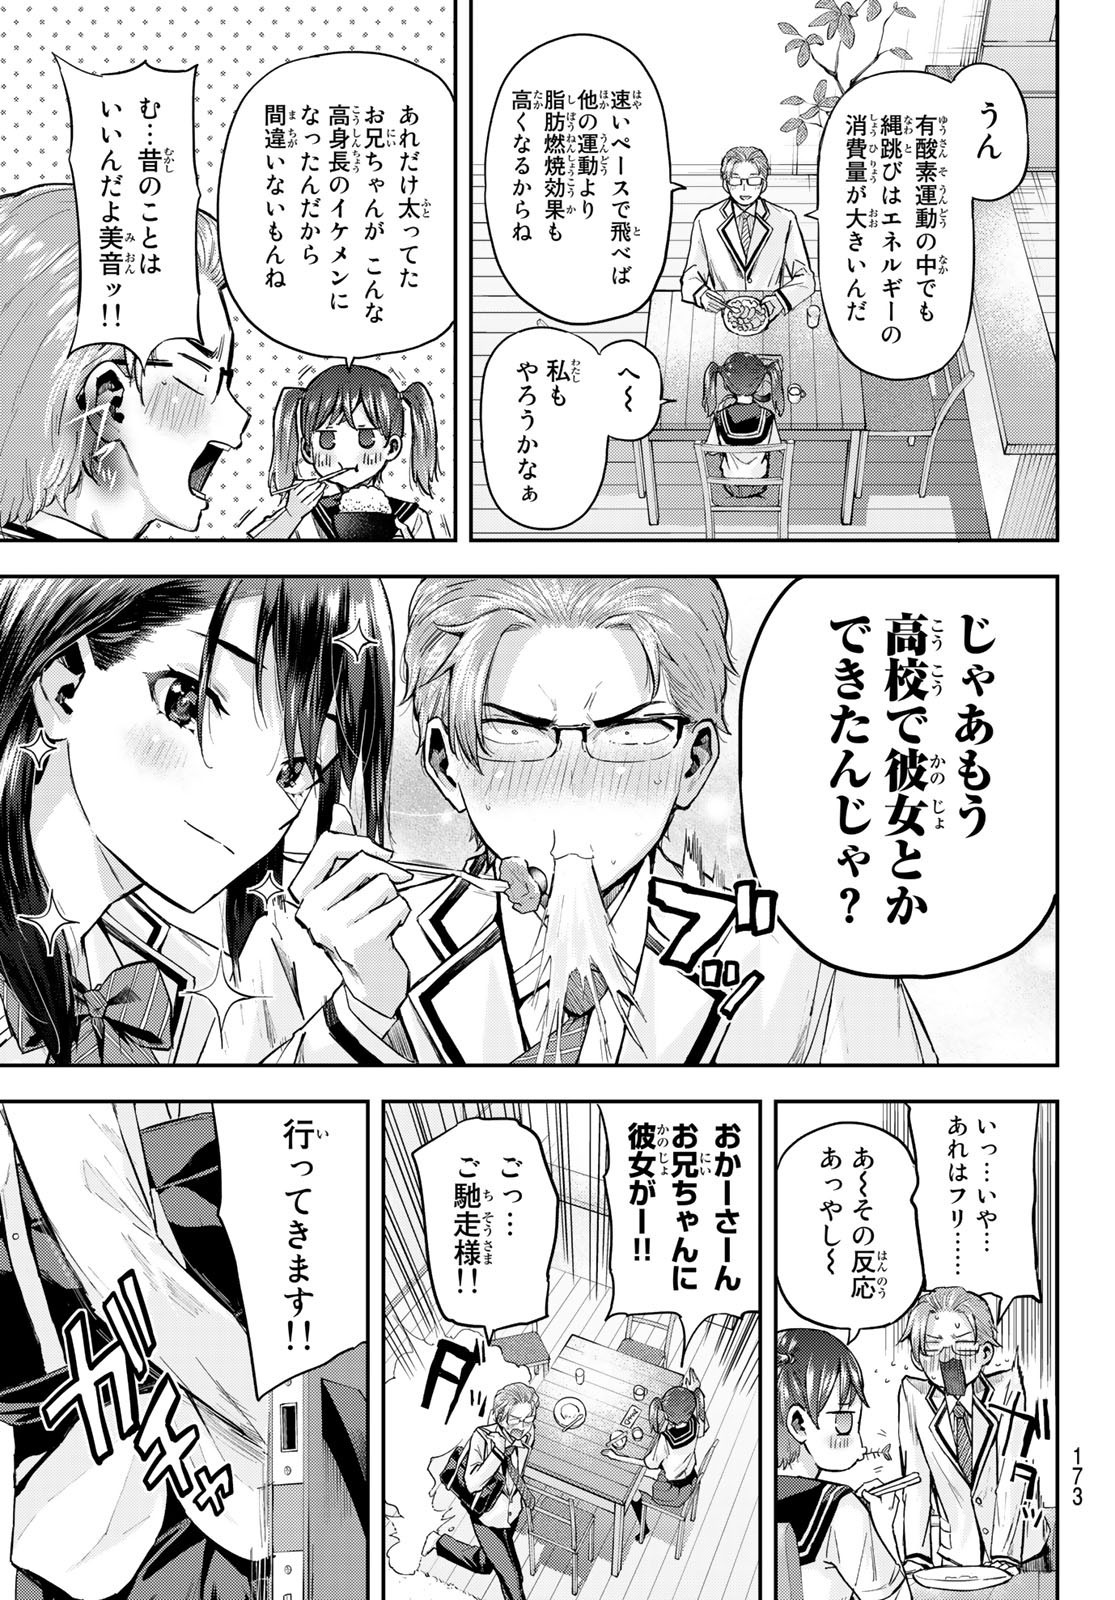 Kitazawa-kun wa A Class - Chapter 004 - Page 3